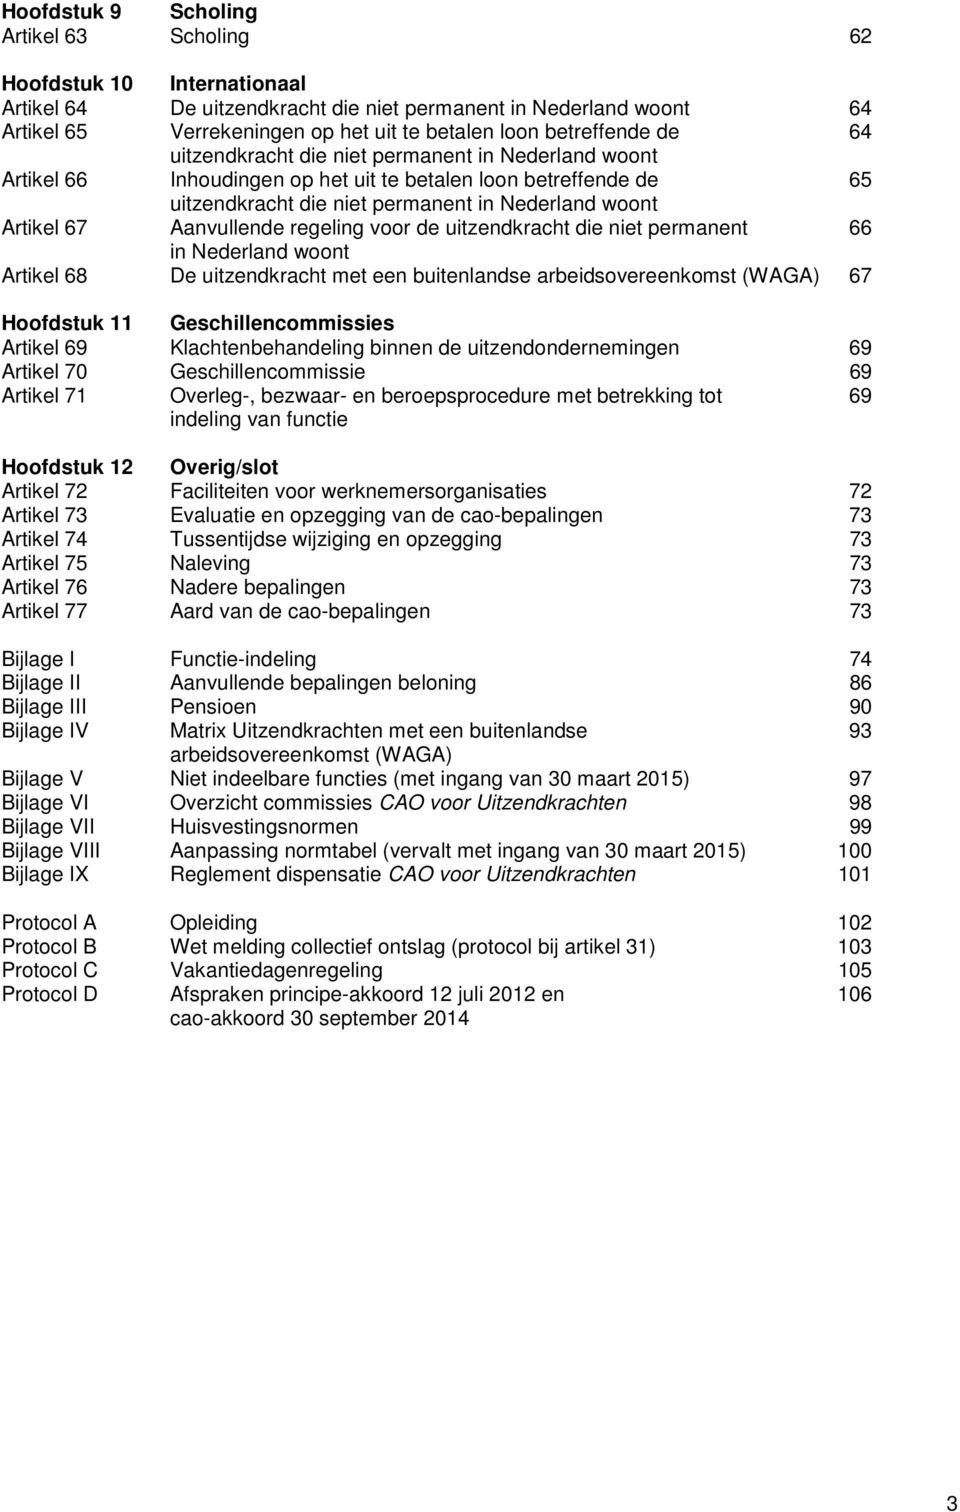 67 Aanvullende regeling voor de uitzendkracht die niet permanent 66 in Nederland woont Artikel 68 De uitzendkracht met een buitenlandse arbeidsovereenkomst (WAGA) 67 Hoofdstuk 11 Geschillencommissies